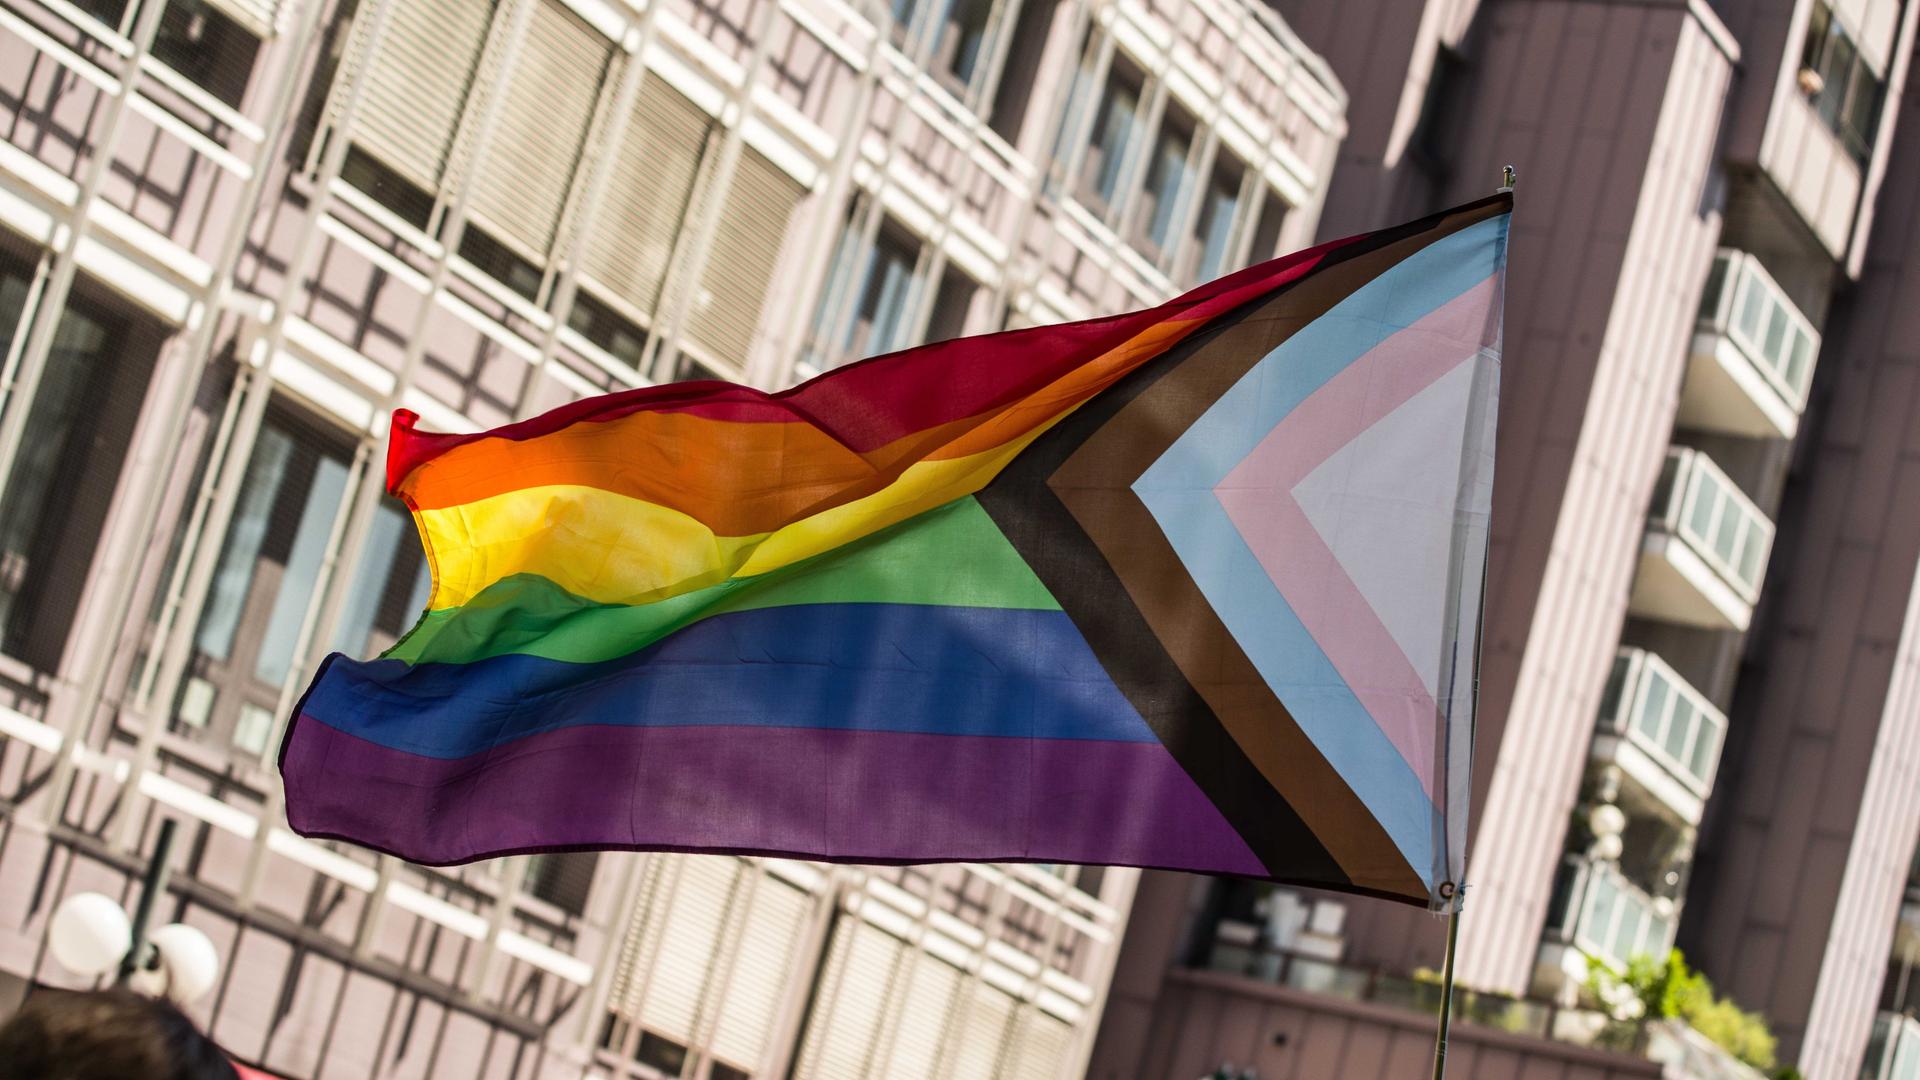 Eine Trans-Pride-Fahne weht im Wind, aufgenommen während einer CSD-Parade in München. Die traditionelle Regenbogenfahne ist ergänzt um einen dreieckigen Einschub, die jeweiligen Farben symbolisieren Teile des queeren Spektrums.